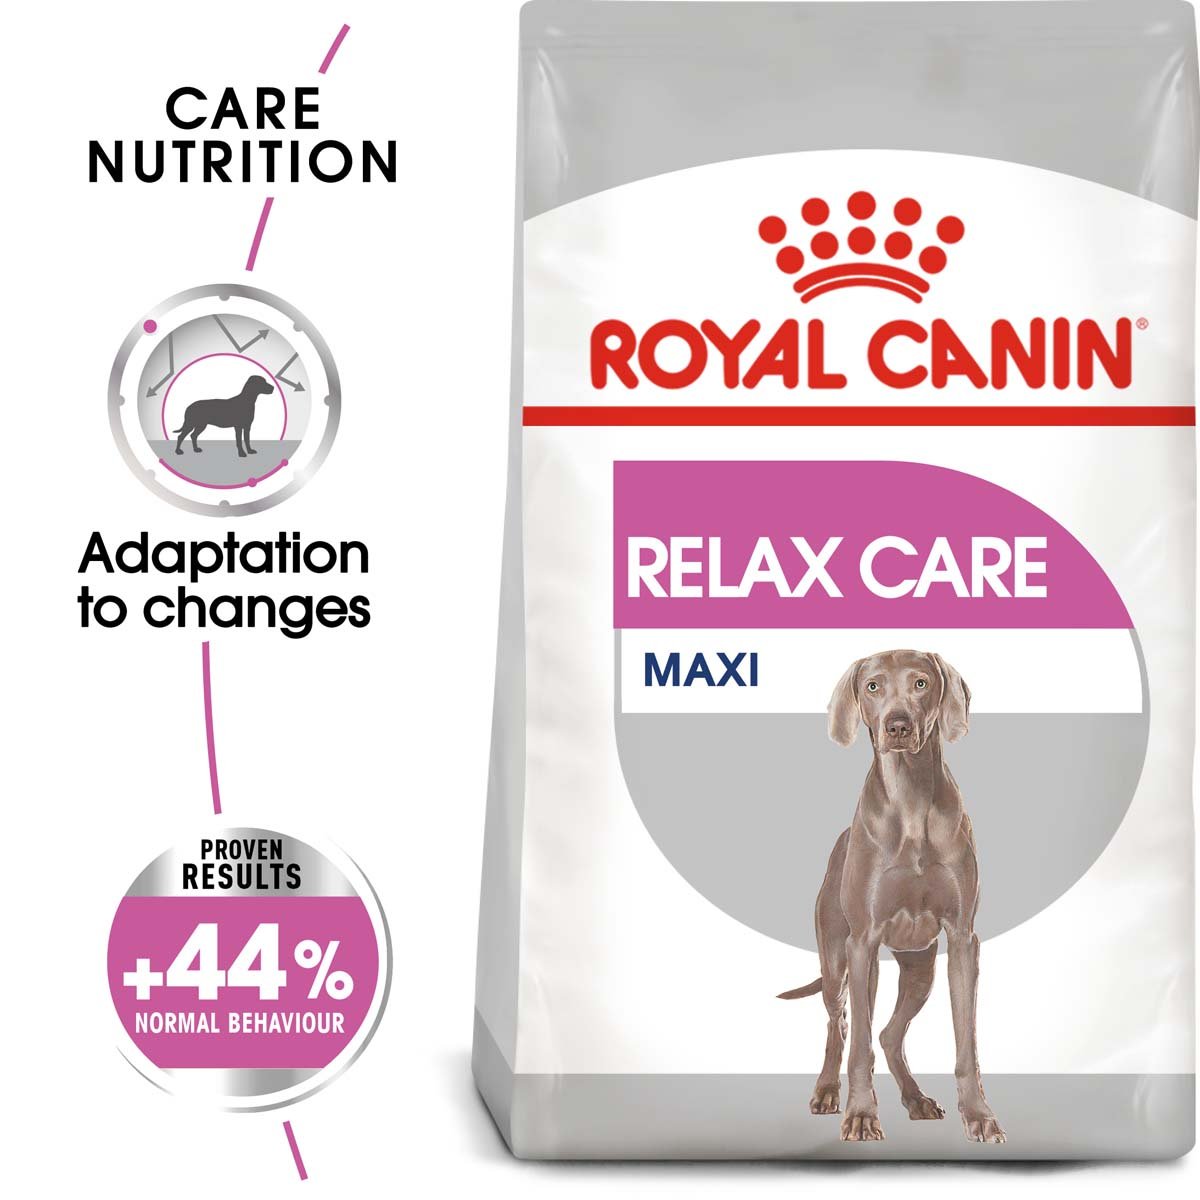 ROYAL CANIN RELAX CARE MAXI Trockenfutter für große Hunde in unruhigem Umfeld 3kg von Royal Canin